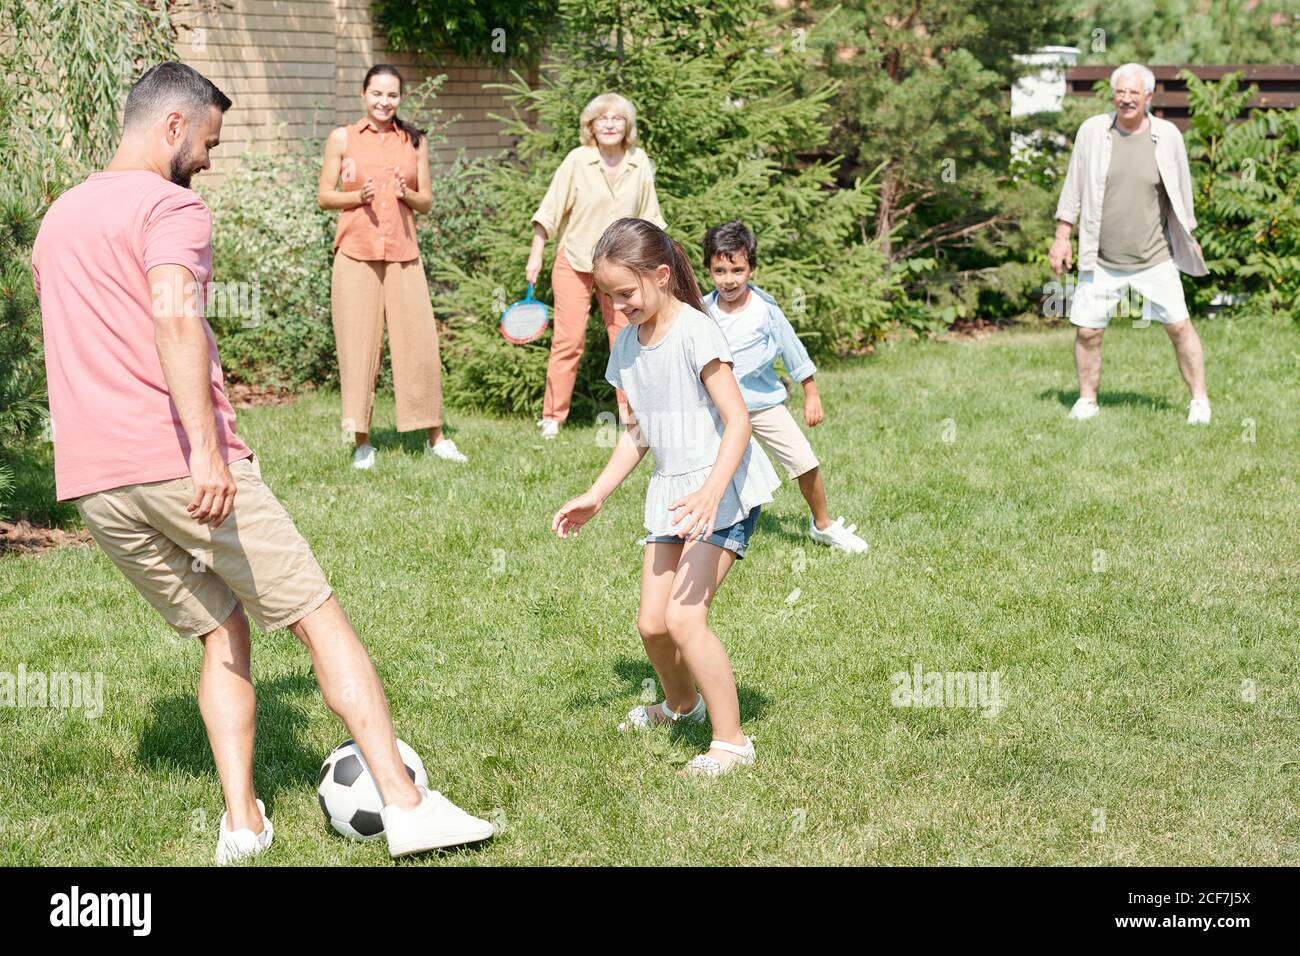 Nonno, papà e due bambini che giocano a calcio sul prato nel parco, nonna e mamma che li guardano Foto Stock